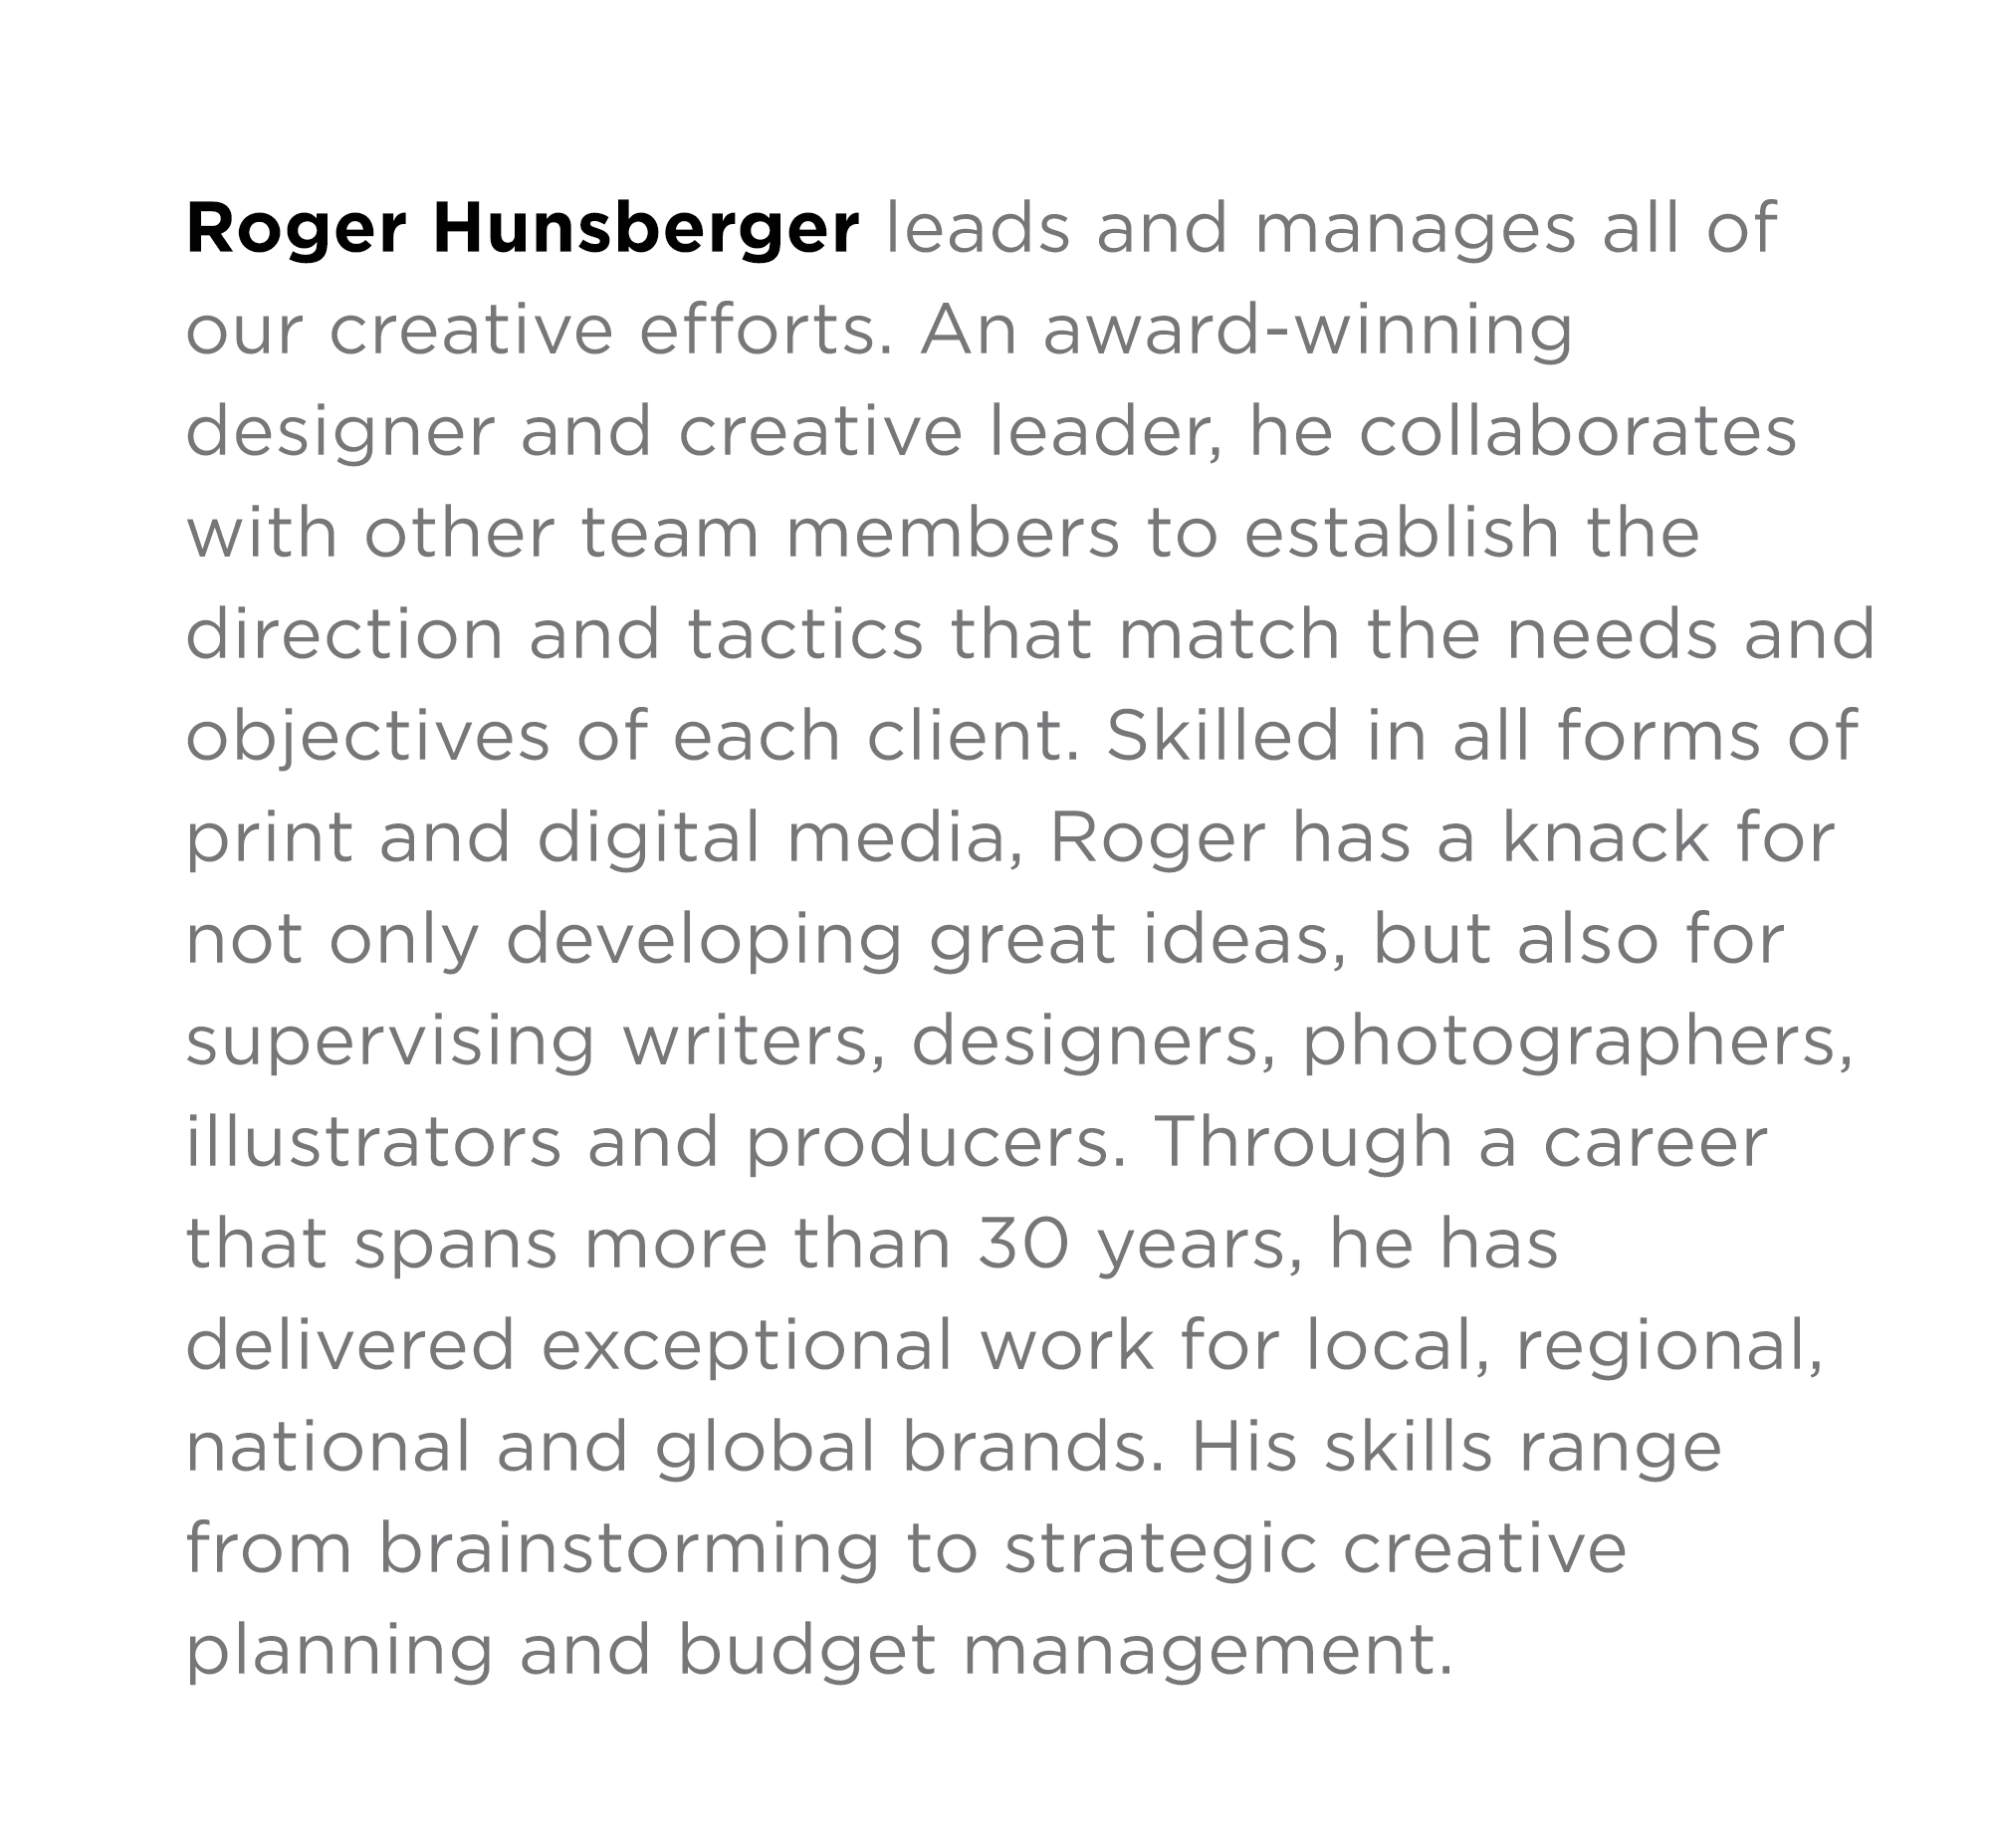 Roger Hunsberger